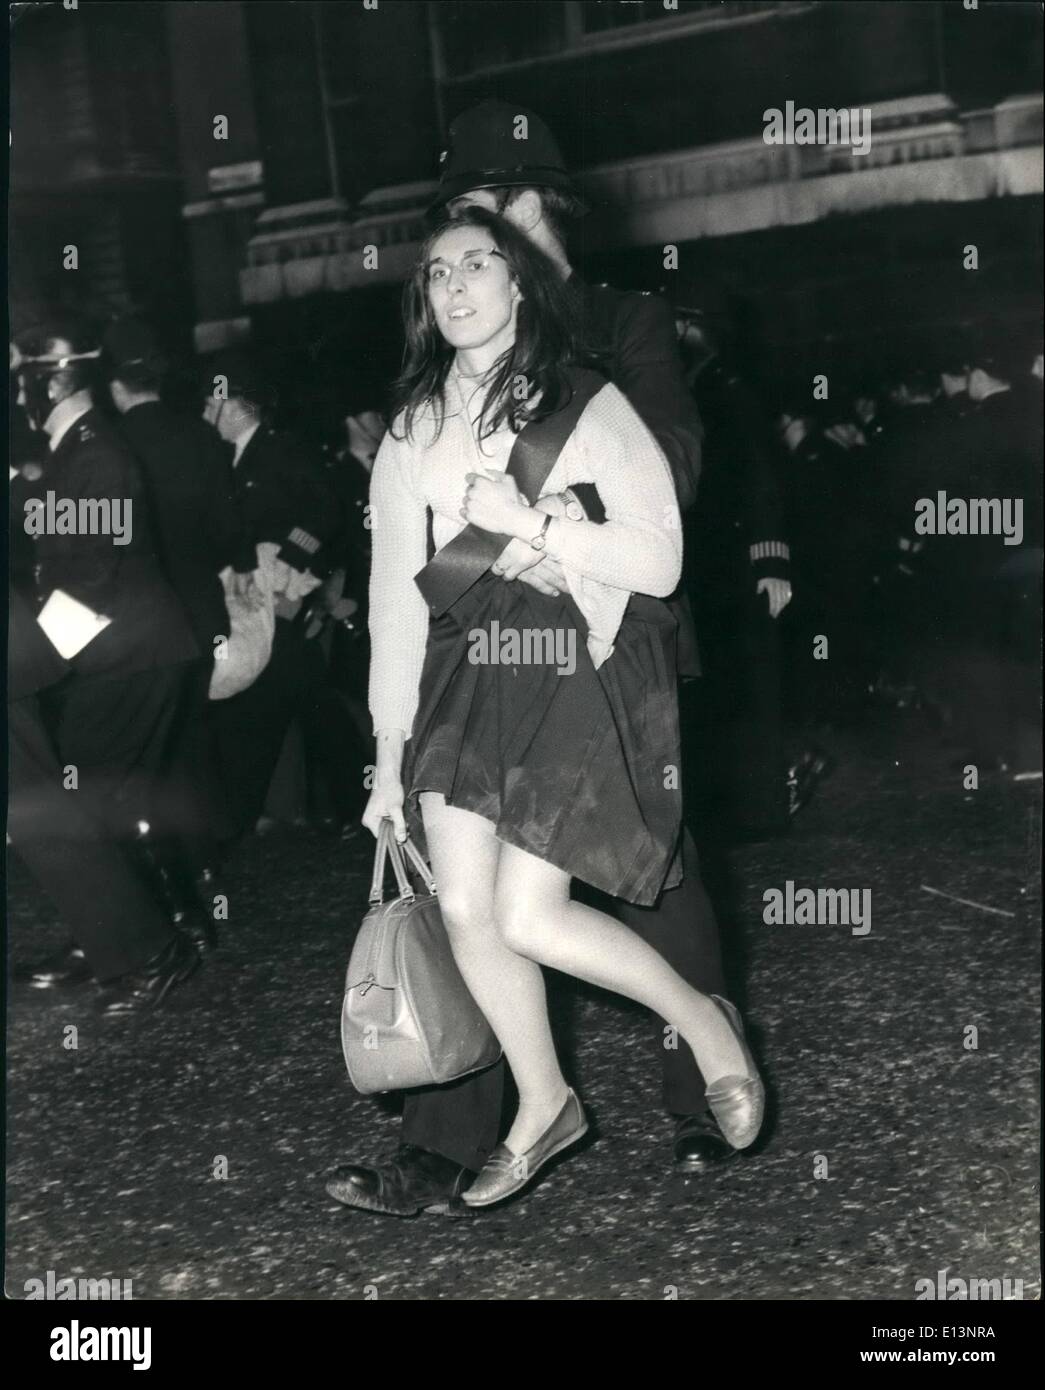 Mar 22, 2012 - Mostra fotografica di ragazza giovane manifestante è visto essendo portati via durante la battaglia di Trafalgar Square questa sera. Foto Stock